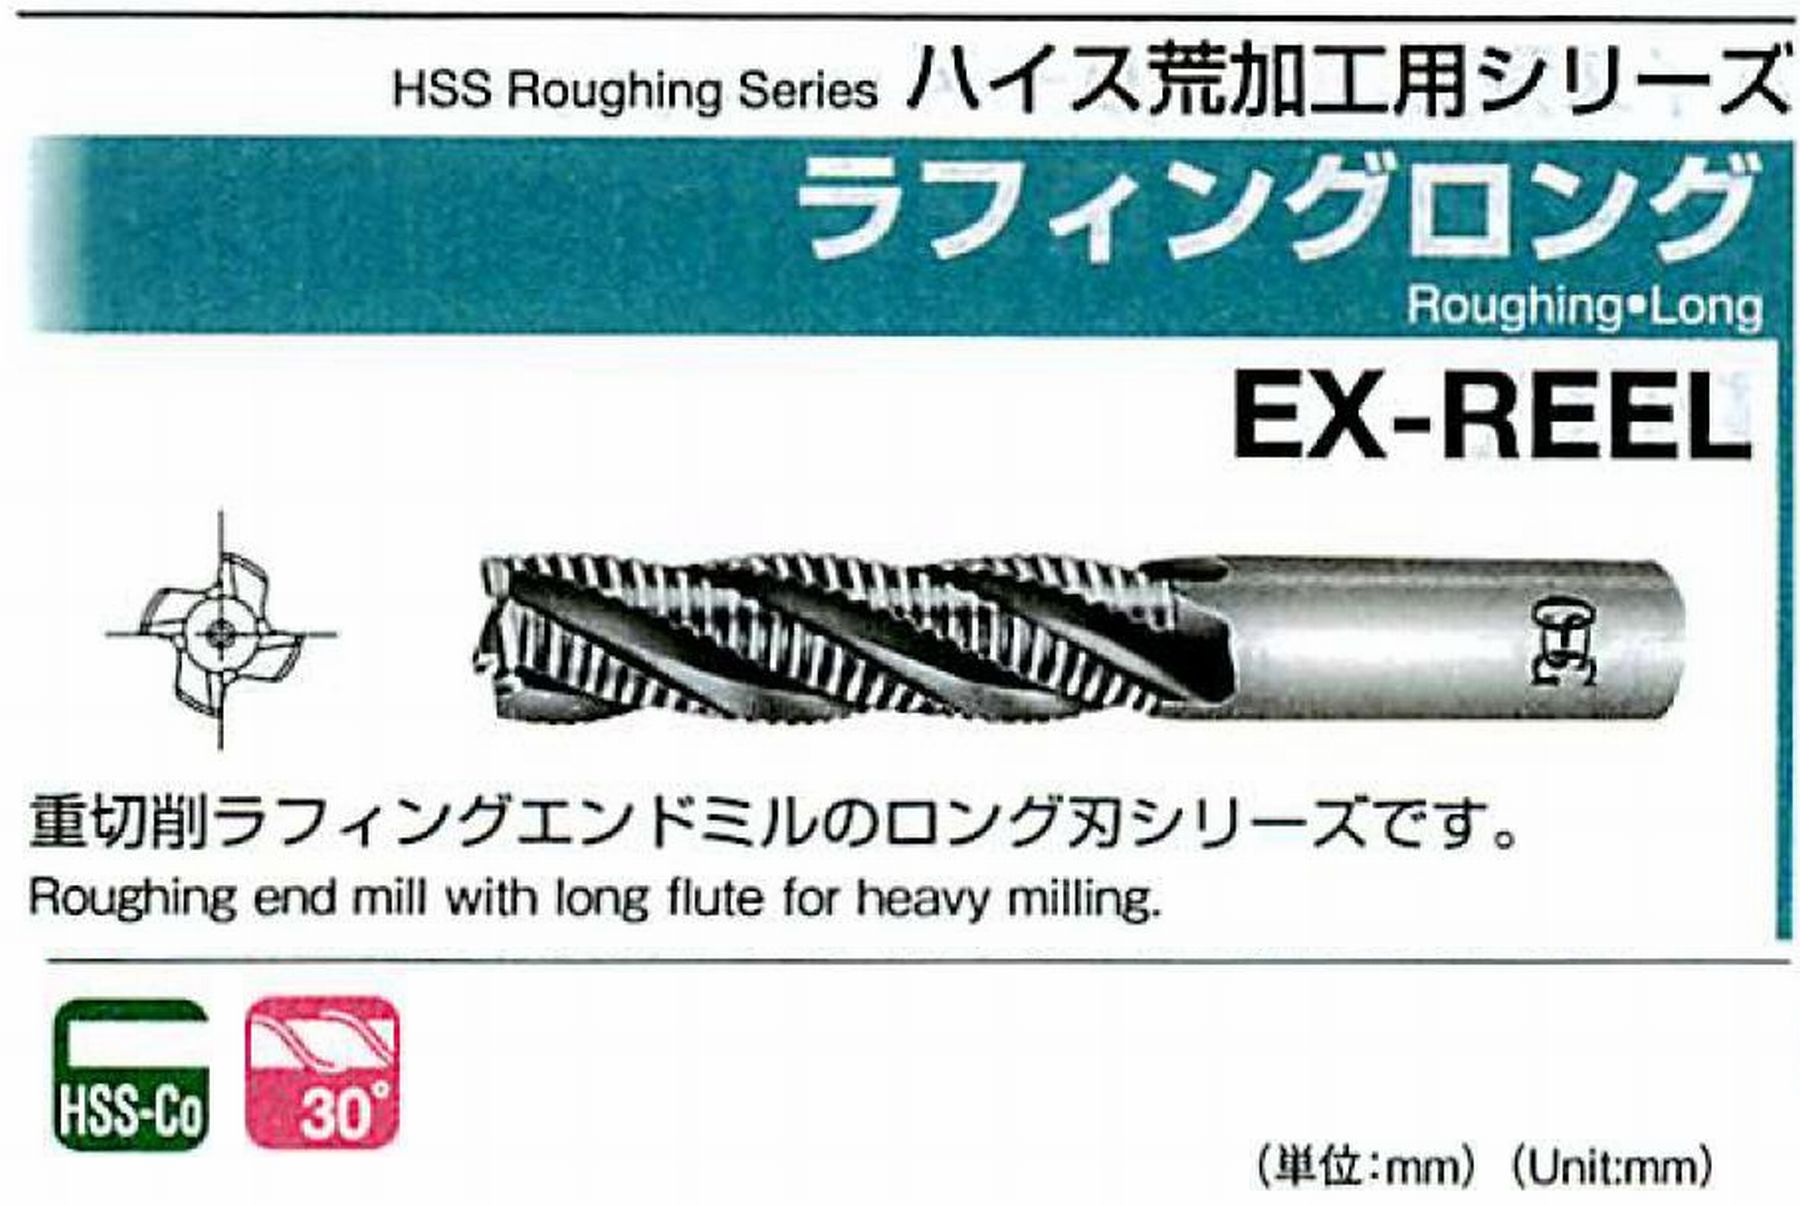 オーエスジー/OSG ラフィング ロング EX-REEL 外径10 全長95 刃長45 シャンク径10mm 刃数4